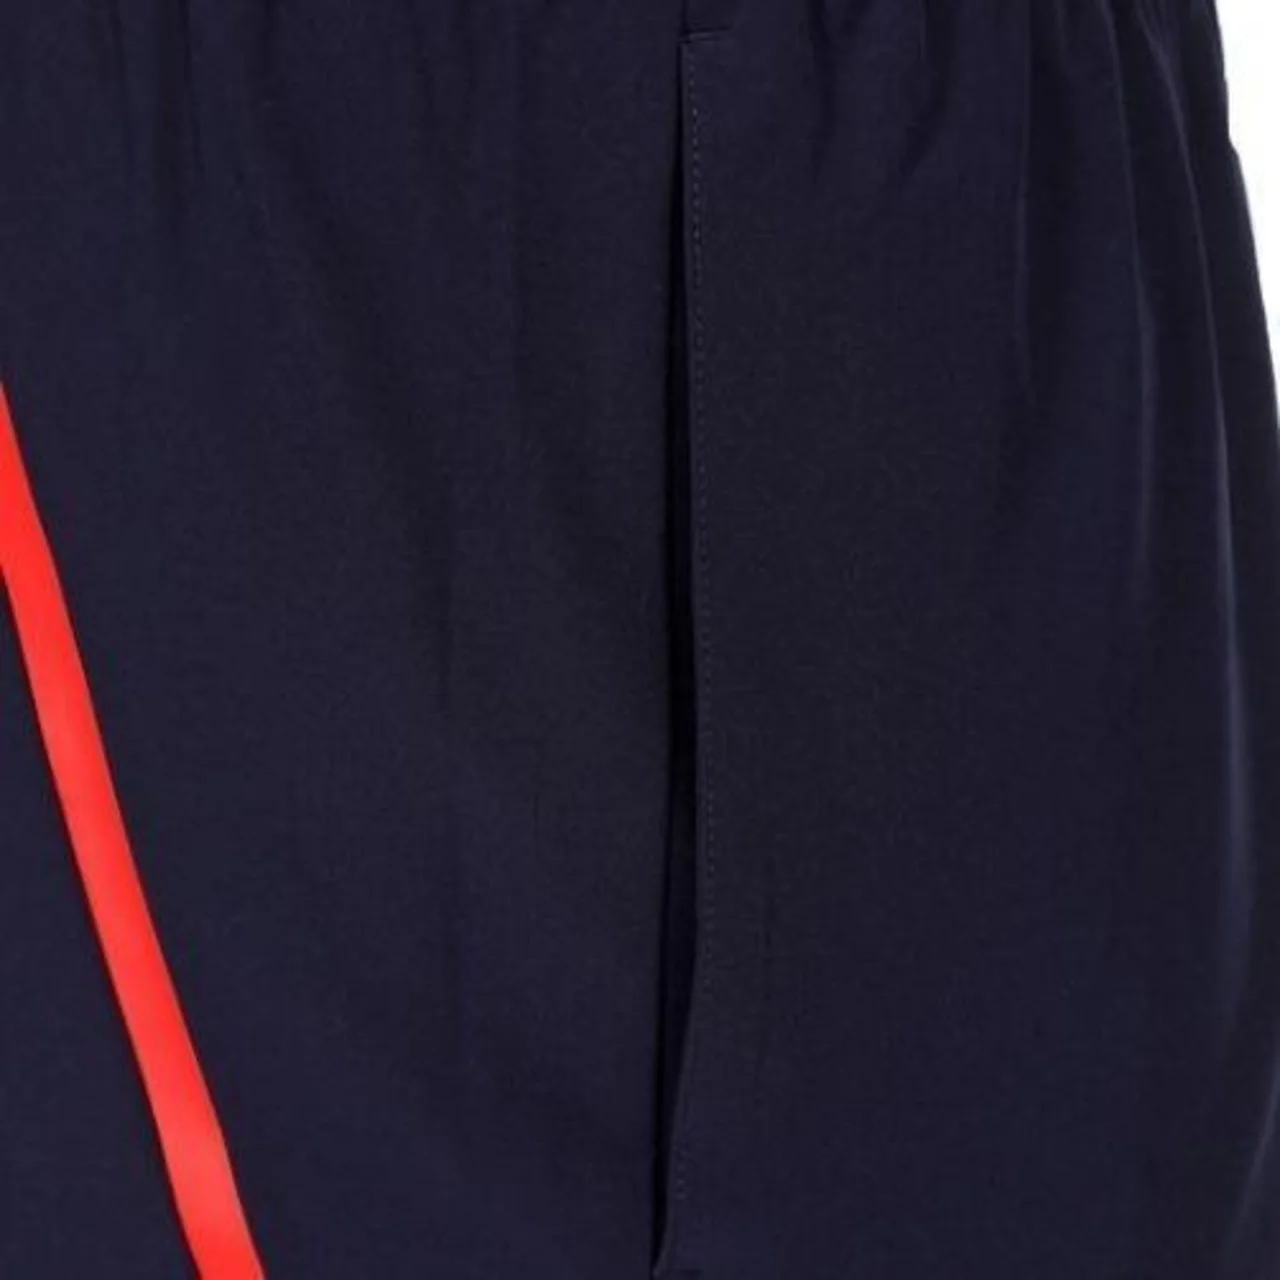 Lacoste Novak Djokovic Tafetta Shorts Navy